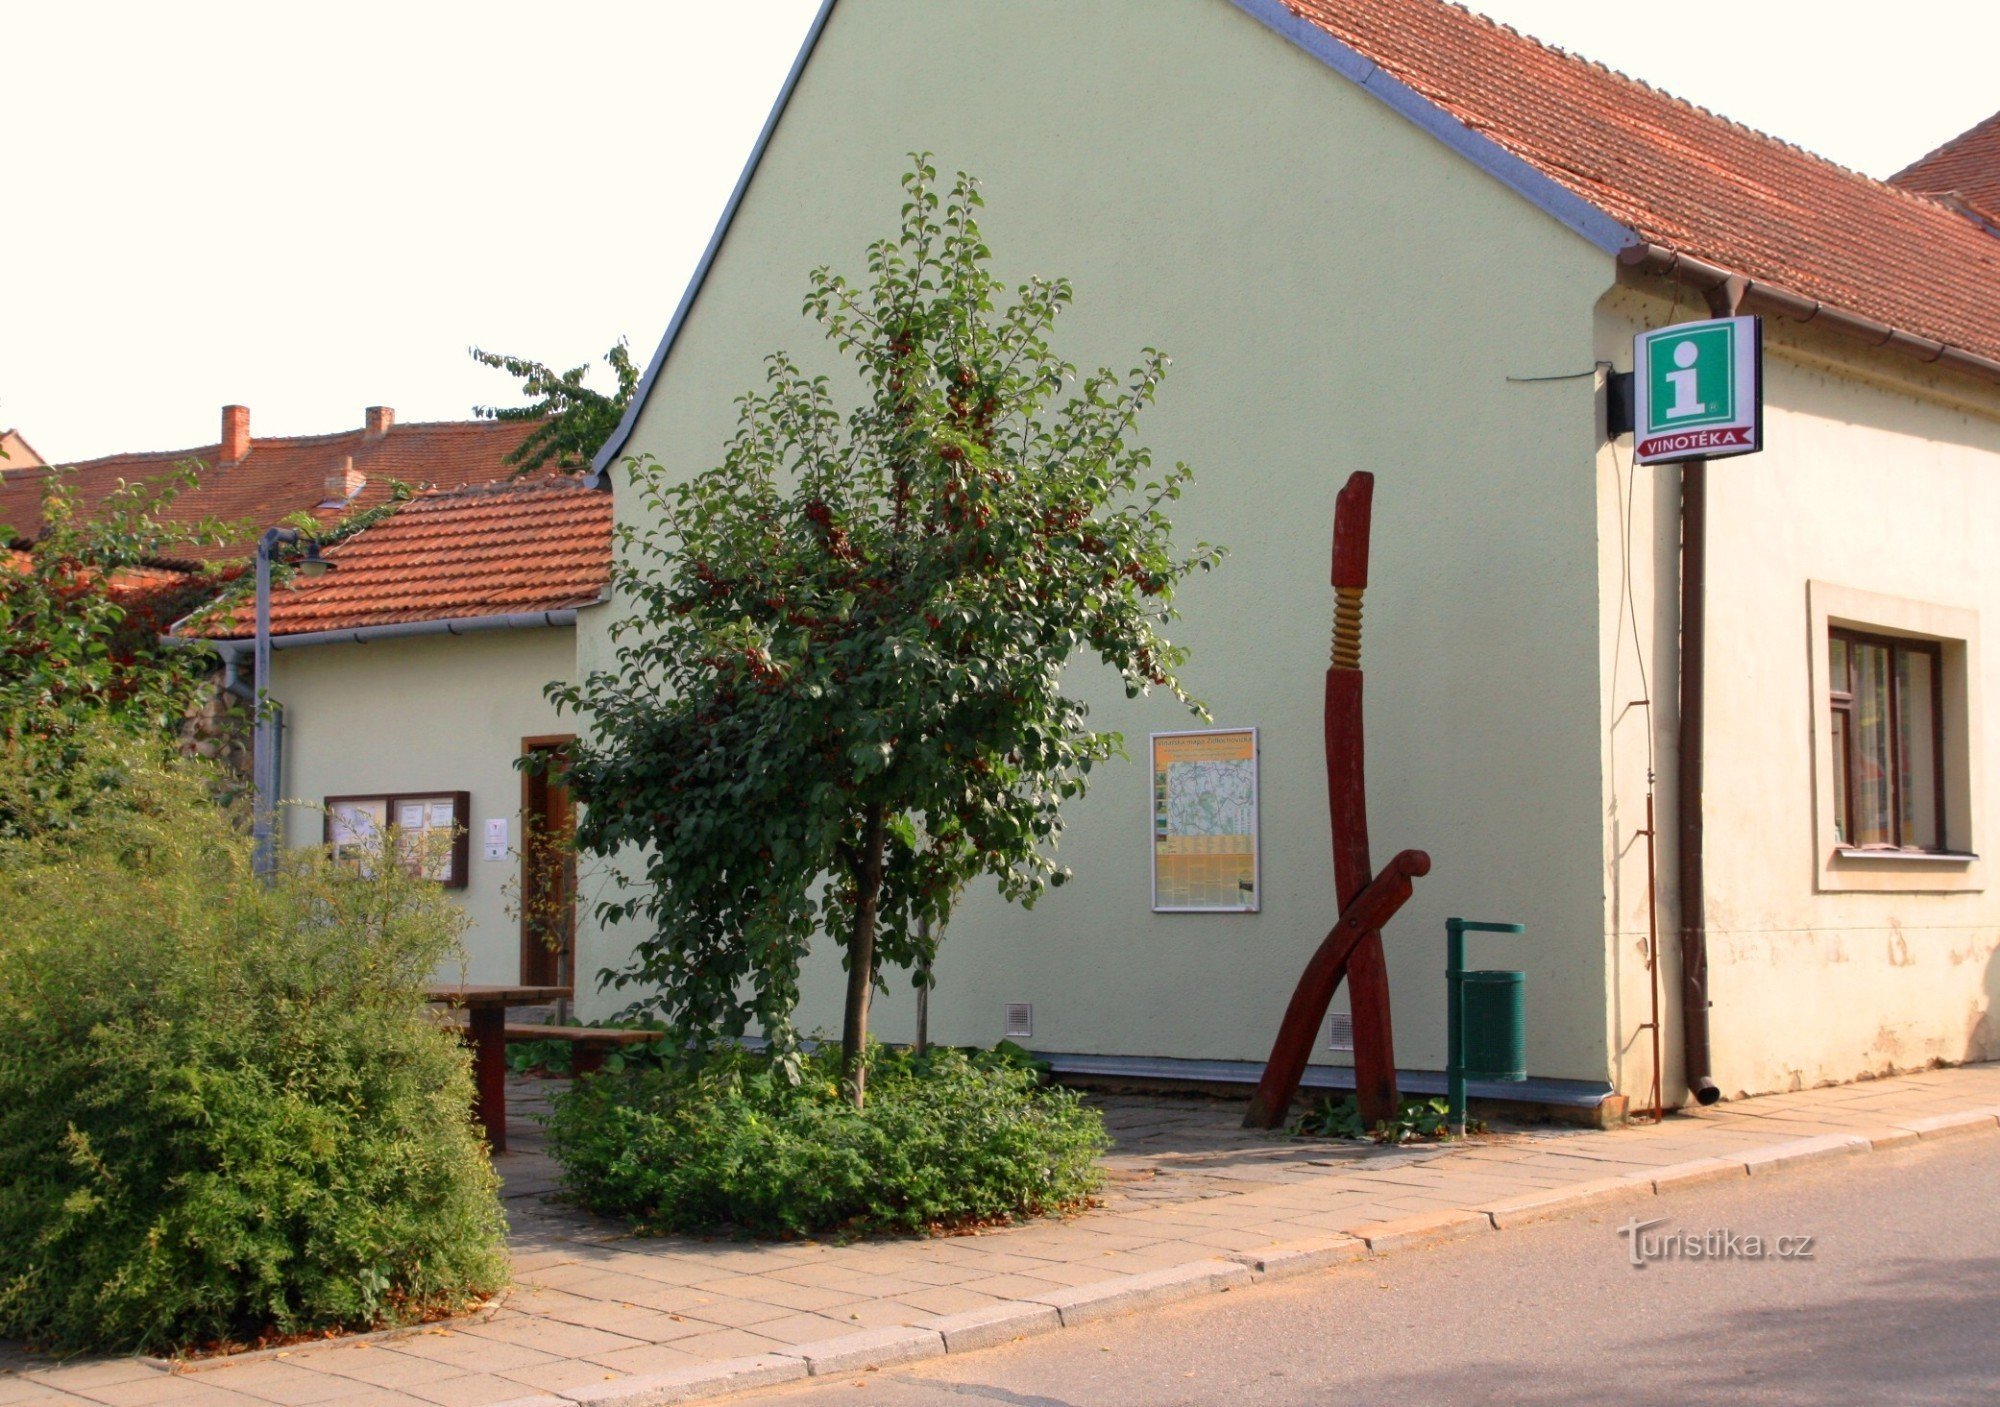 ジドロホヴィツェ - 地域の観光情報センターとワインショップ